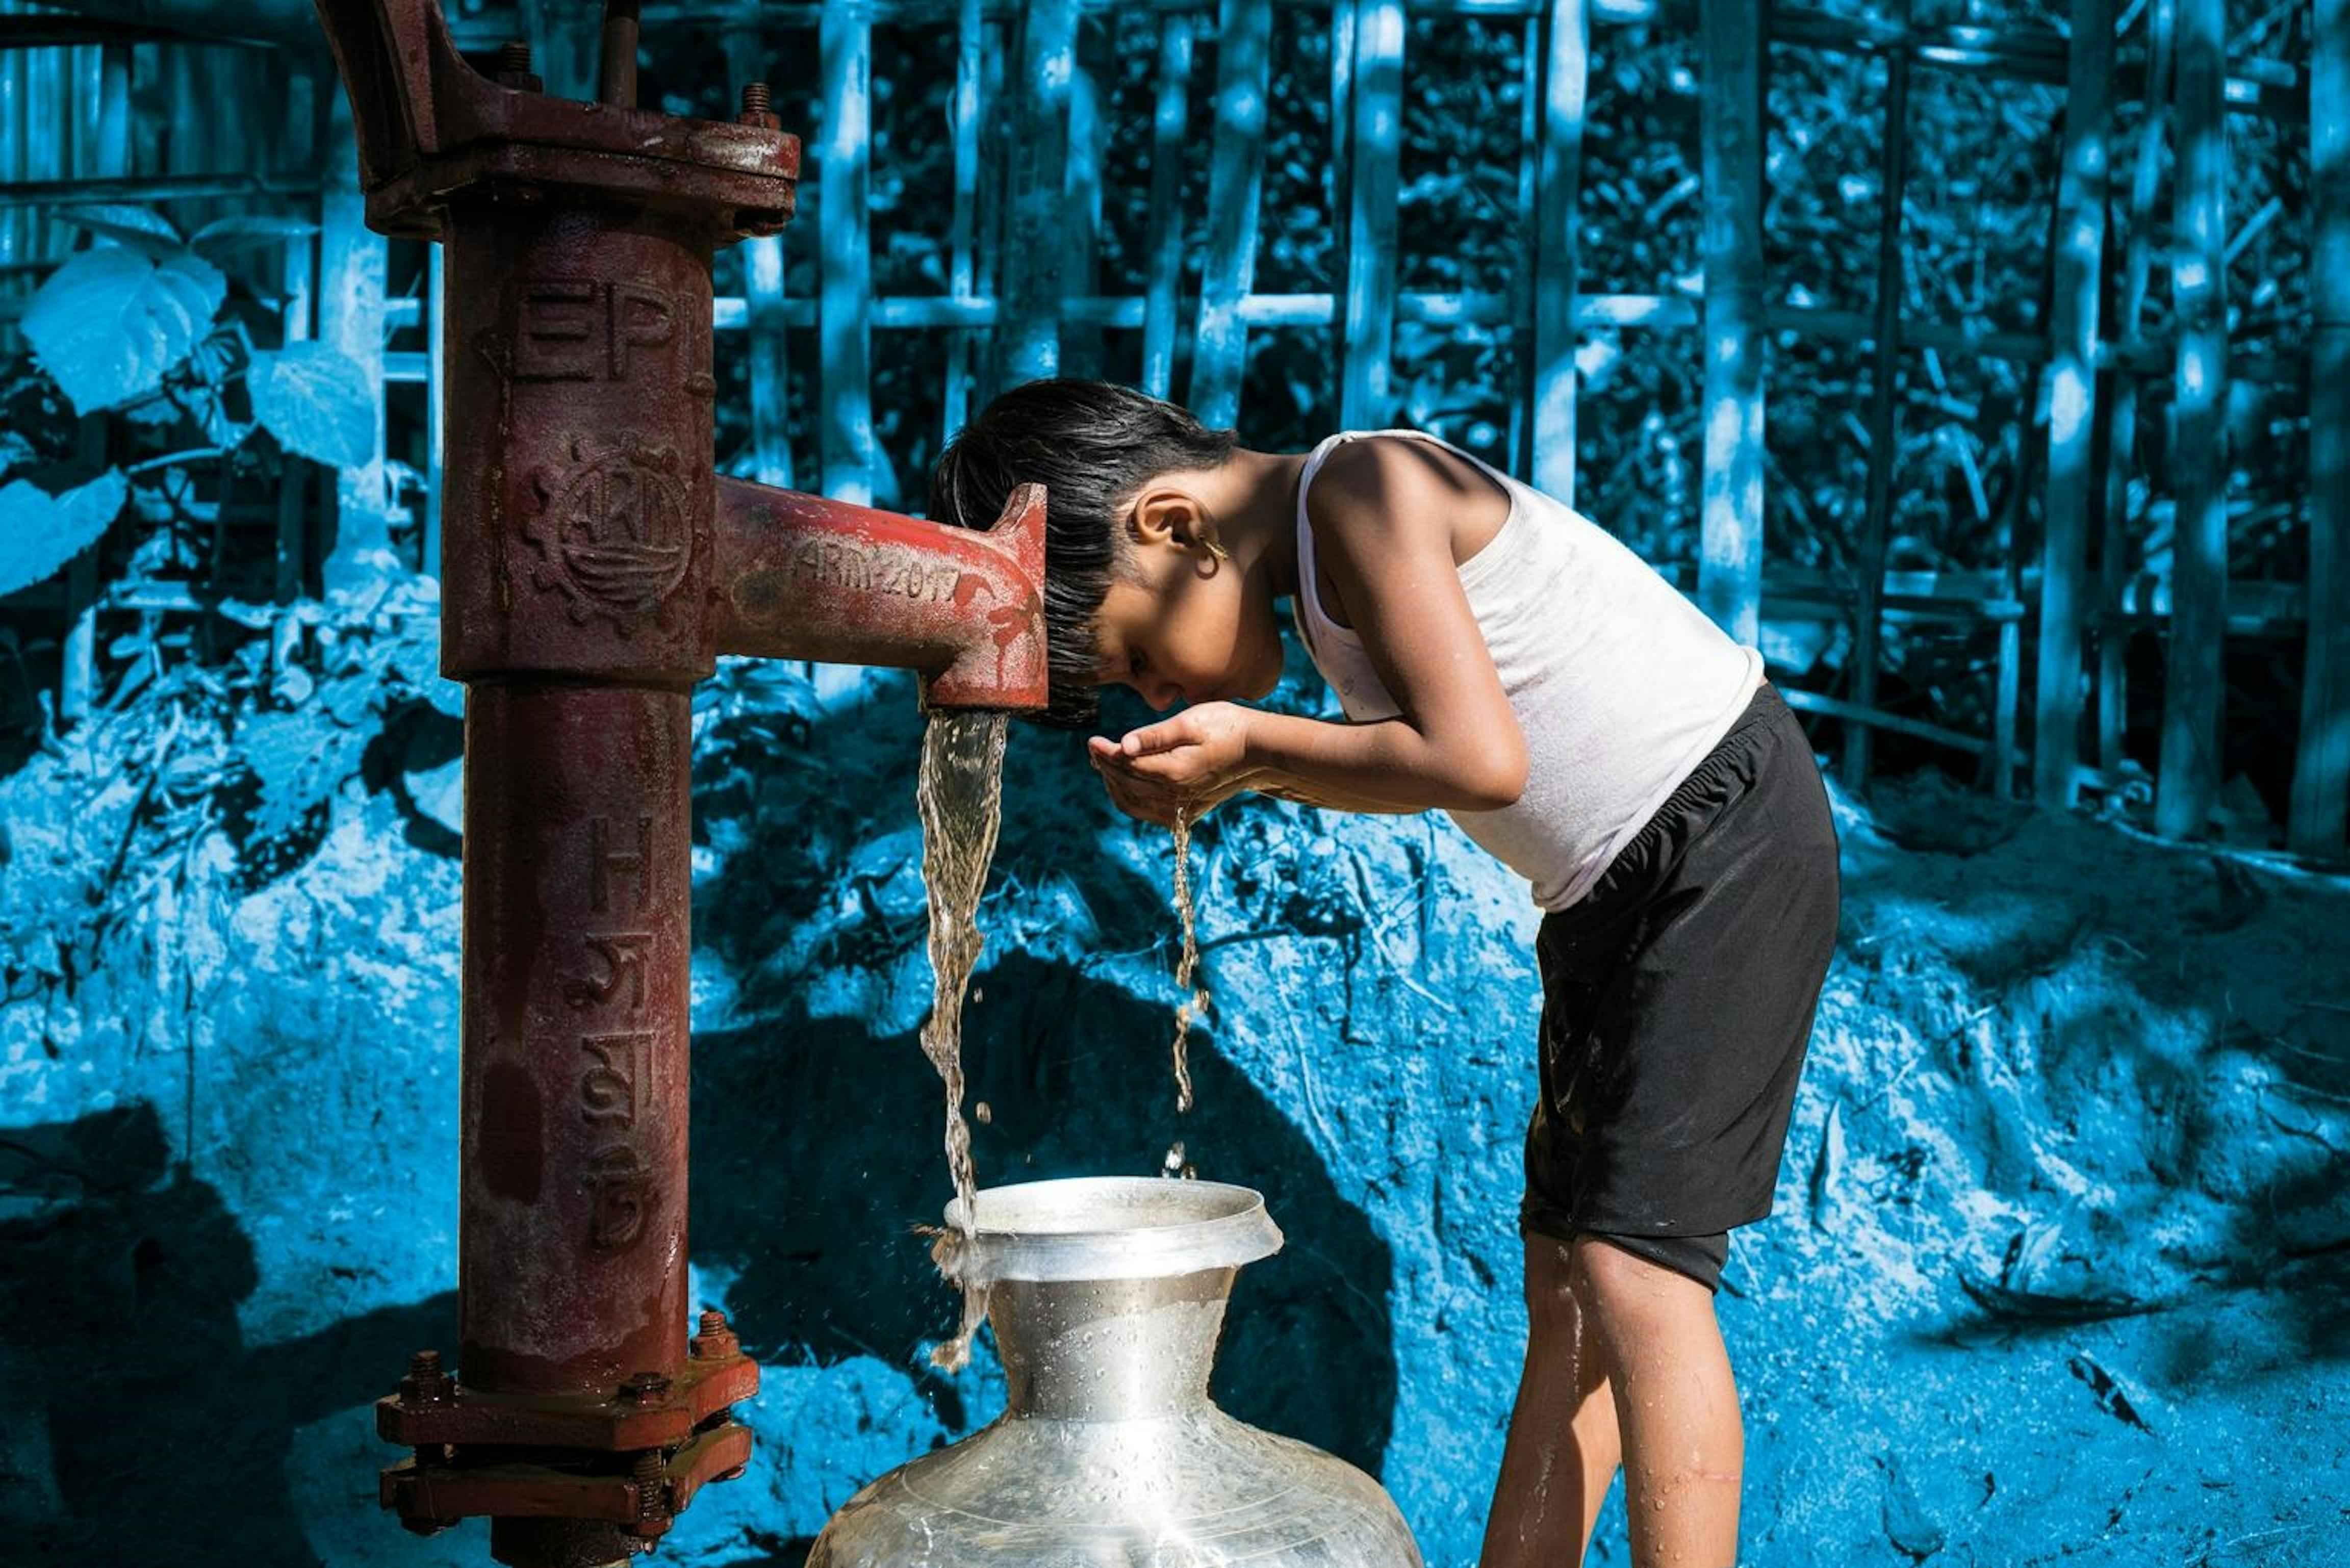 Una bambina Rohingya beve da una fontanella installata nel campo profughi di Balukhali (Bangladesh), dove hanno trovato rifugio oltre 600mila civili in fuga dai massacri etnici nel vicino Myanmar - ©UNICEF/UN0156782/Knowles Coursin